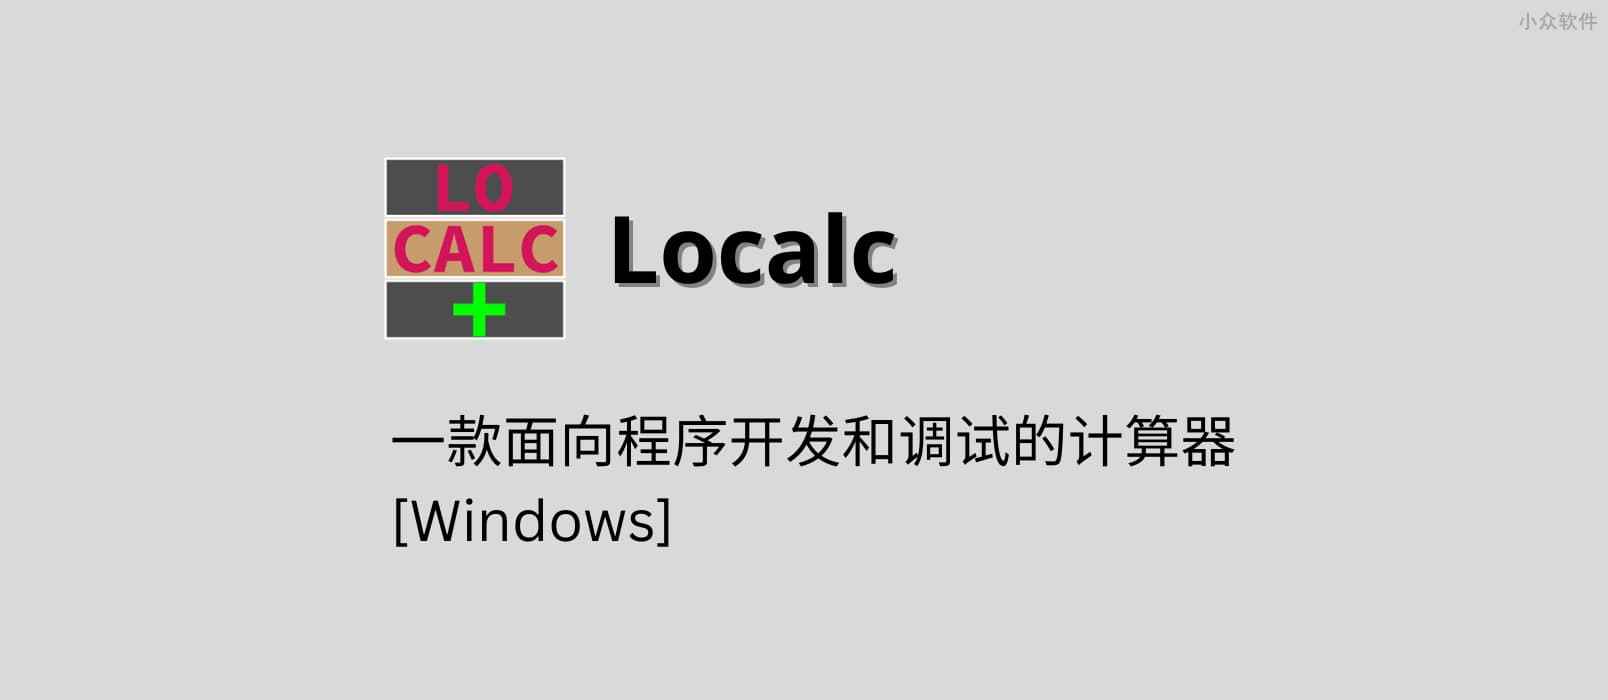 Localc - 一款面向程序开发和调试的计算器[Windows] 1